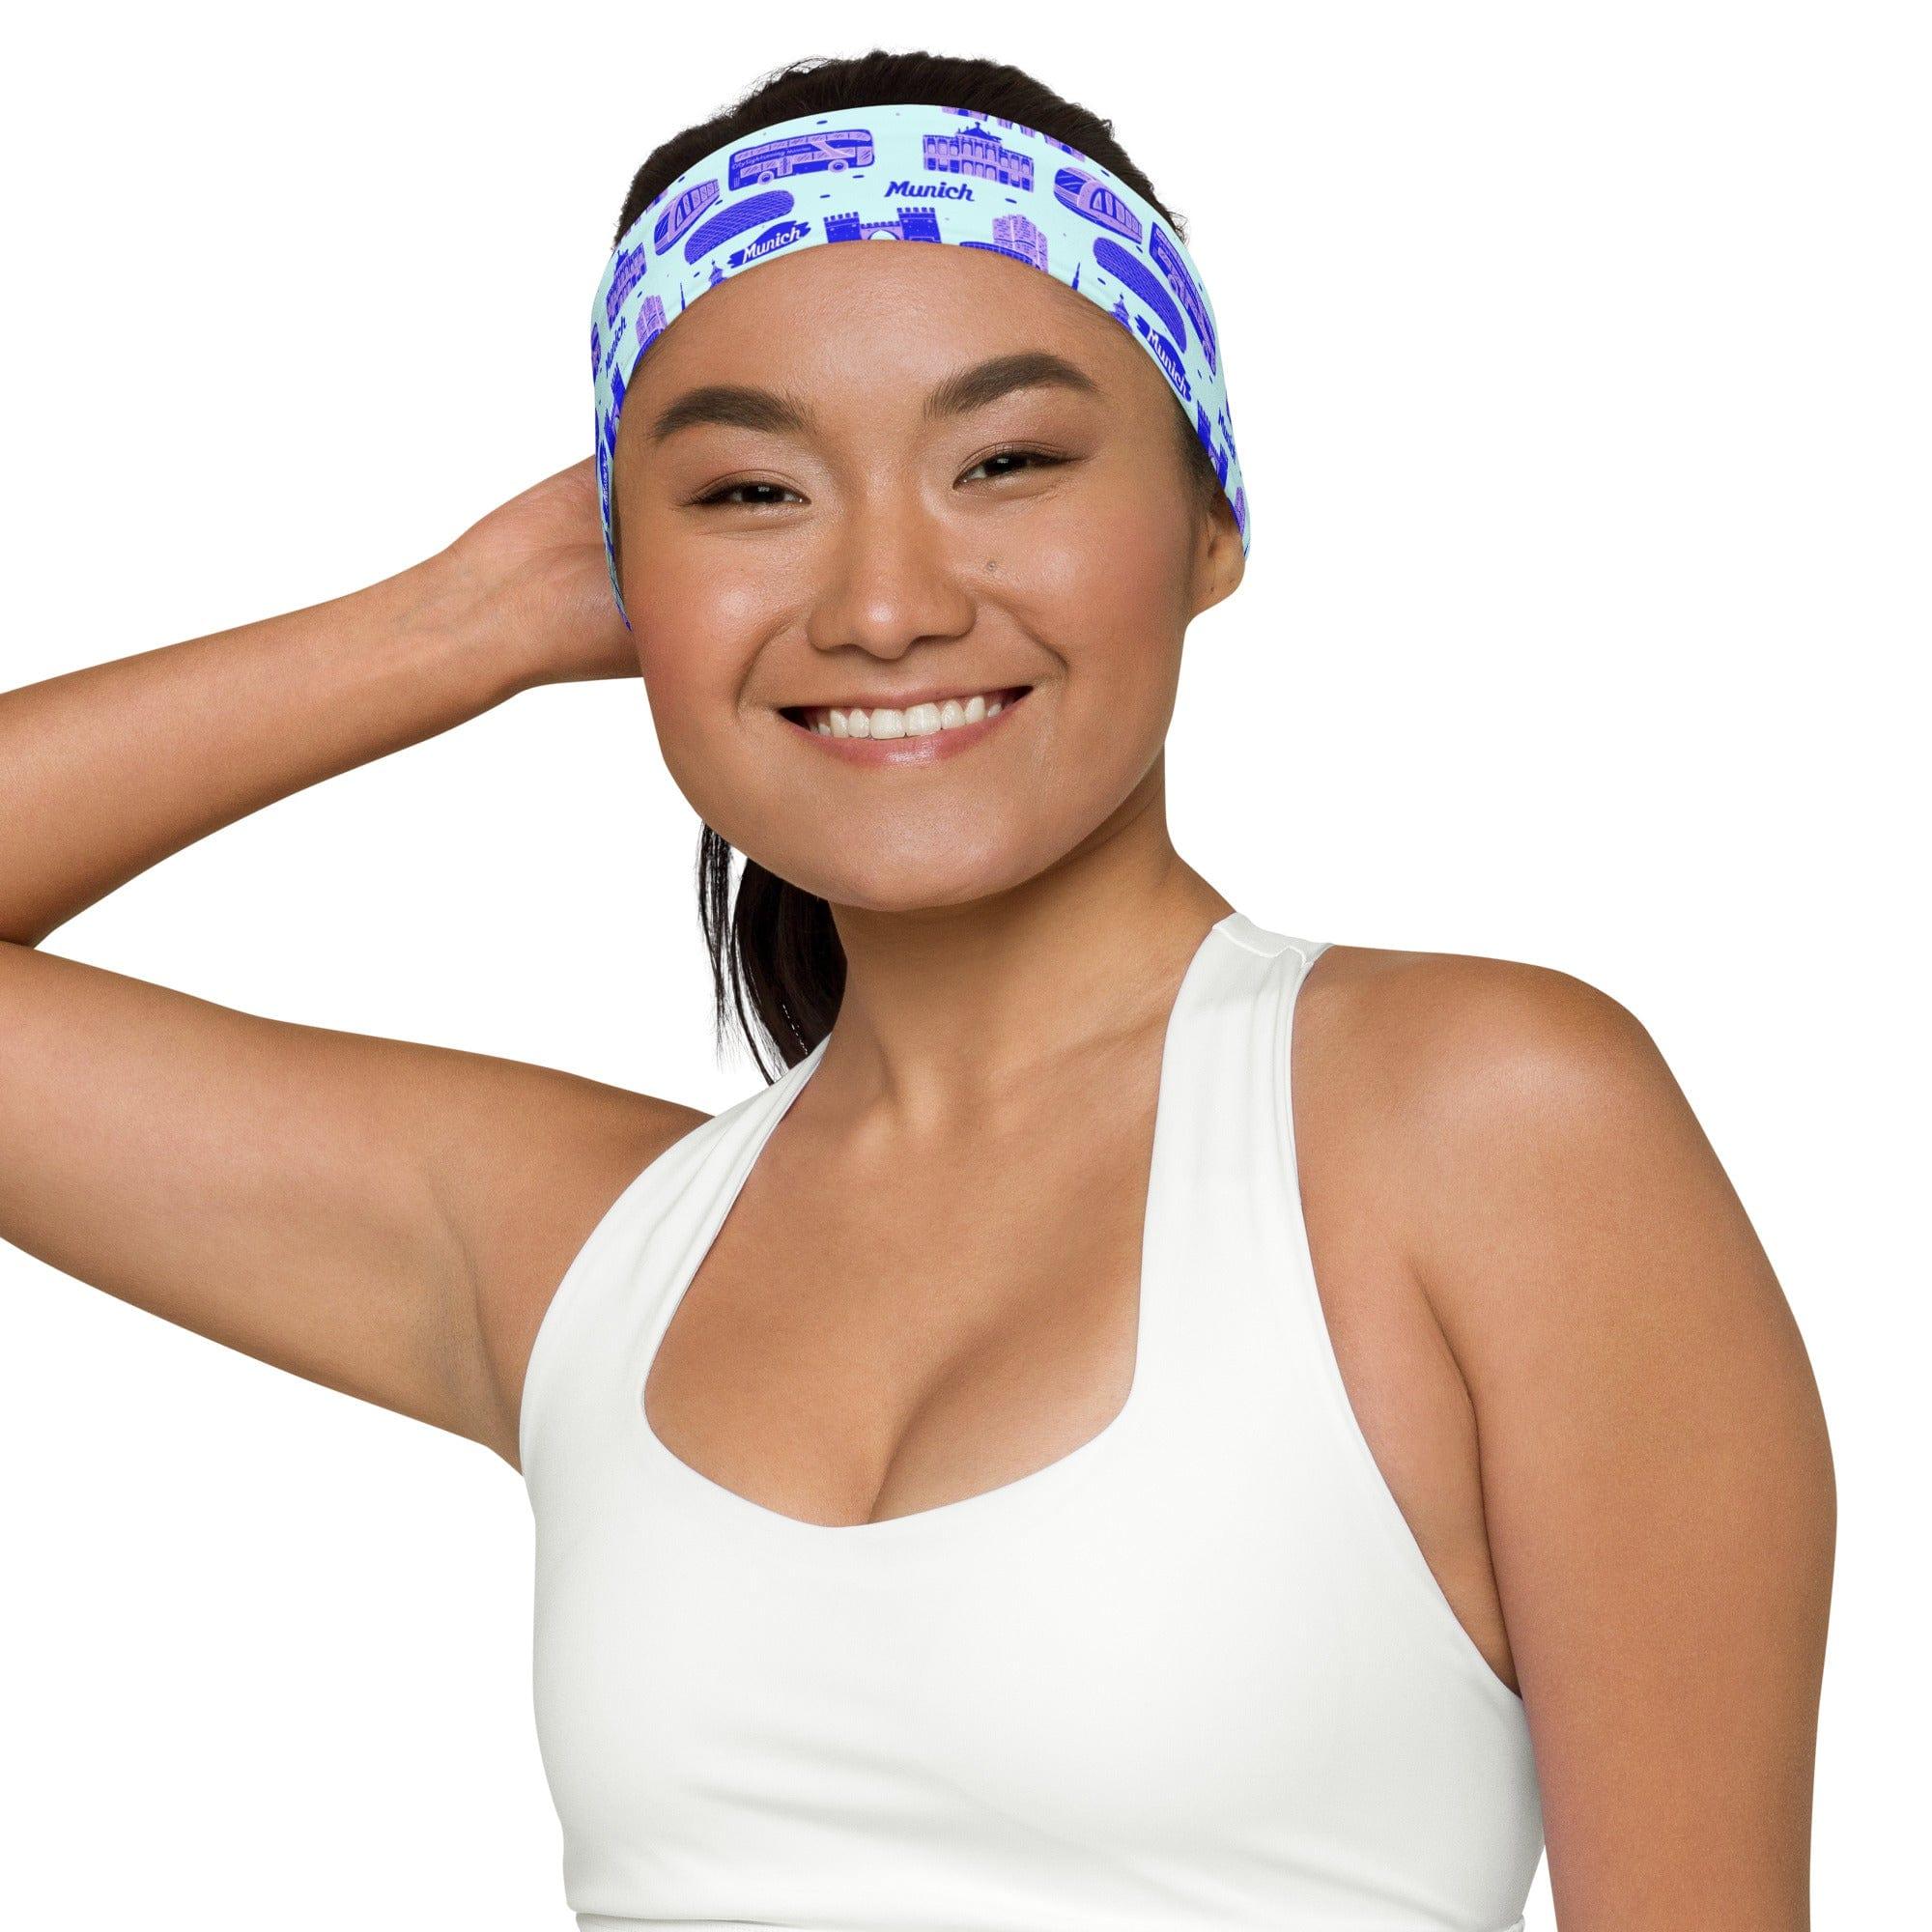 Munich City Themed Quick Dry Unisex Strech Headband - TopKoalaTee